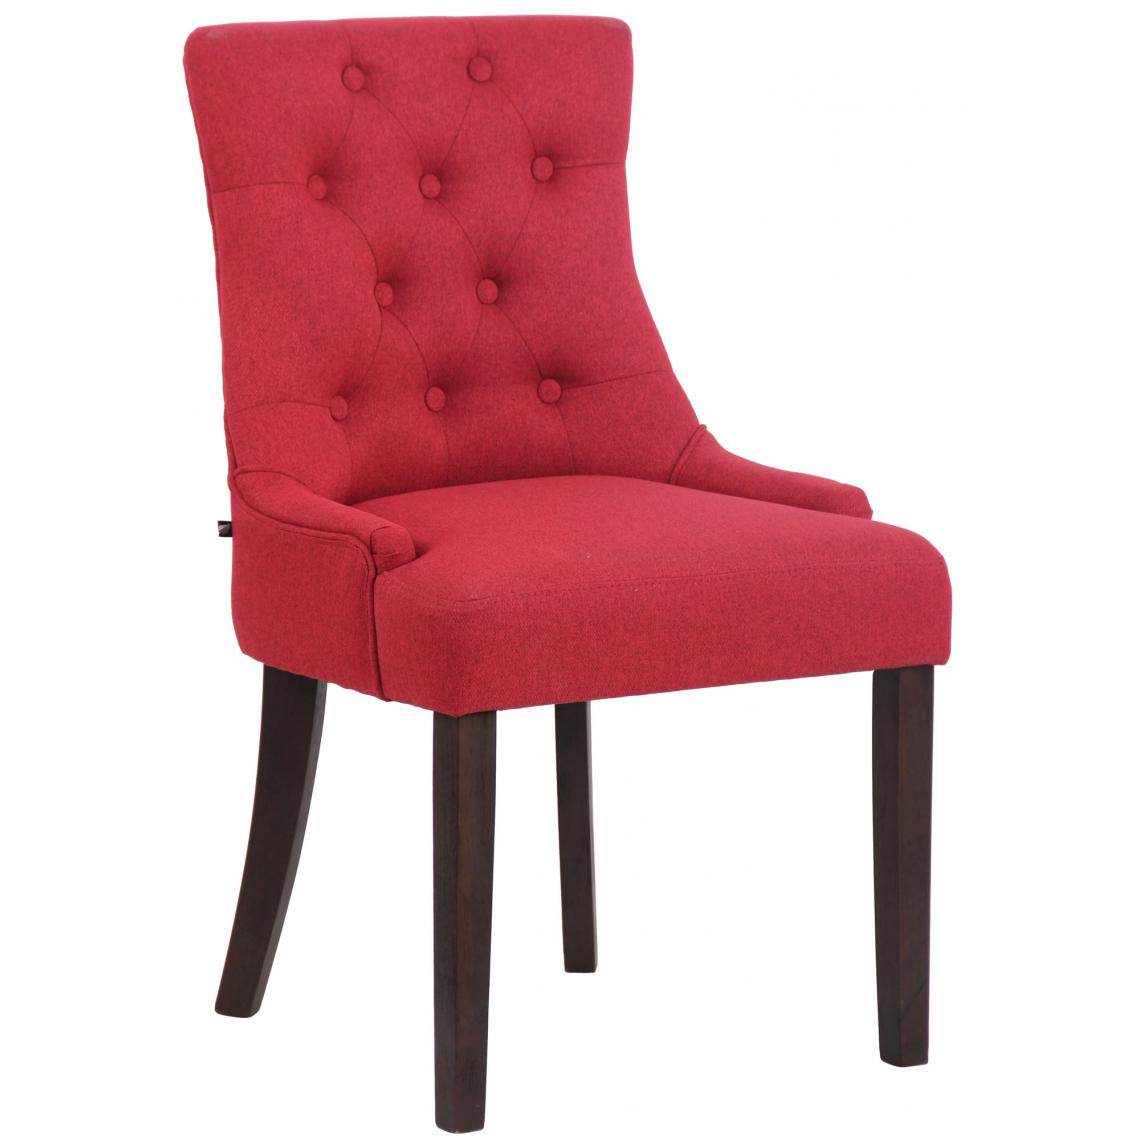 Icaverne - Esthetique Chaise de salle à manger tissu gamme Avarua antique couleur rouge - Chaises